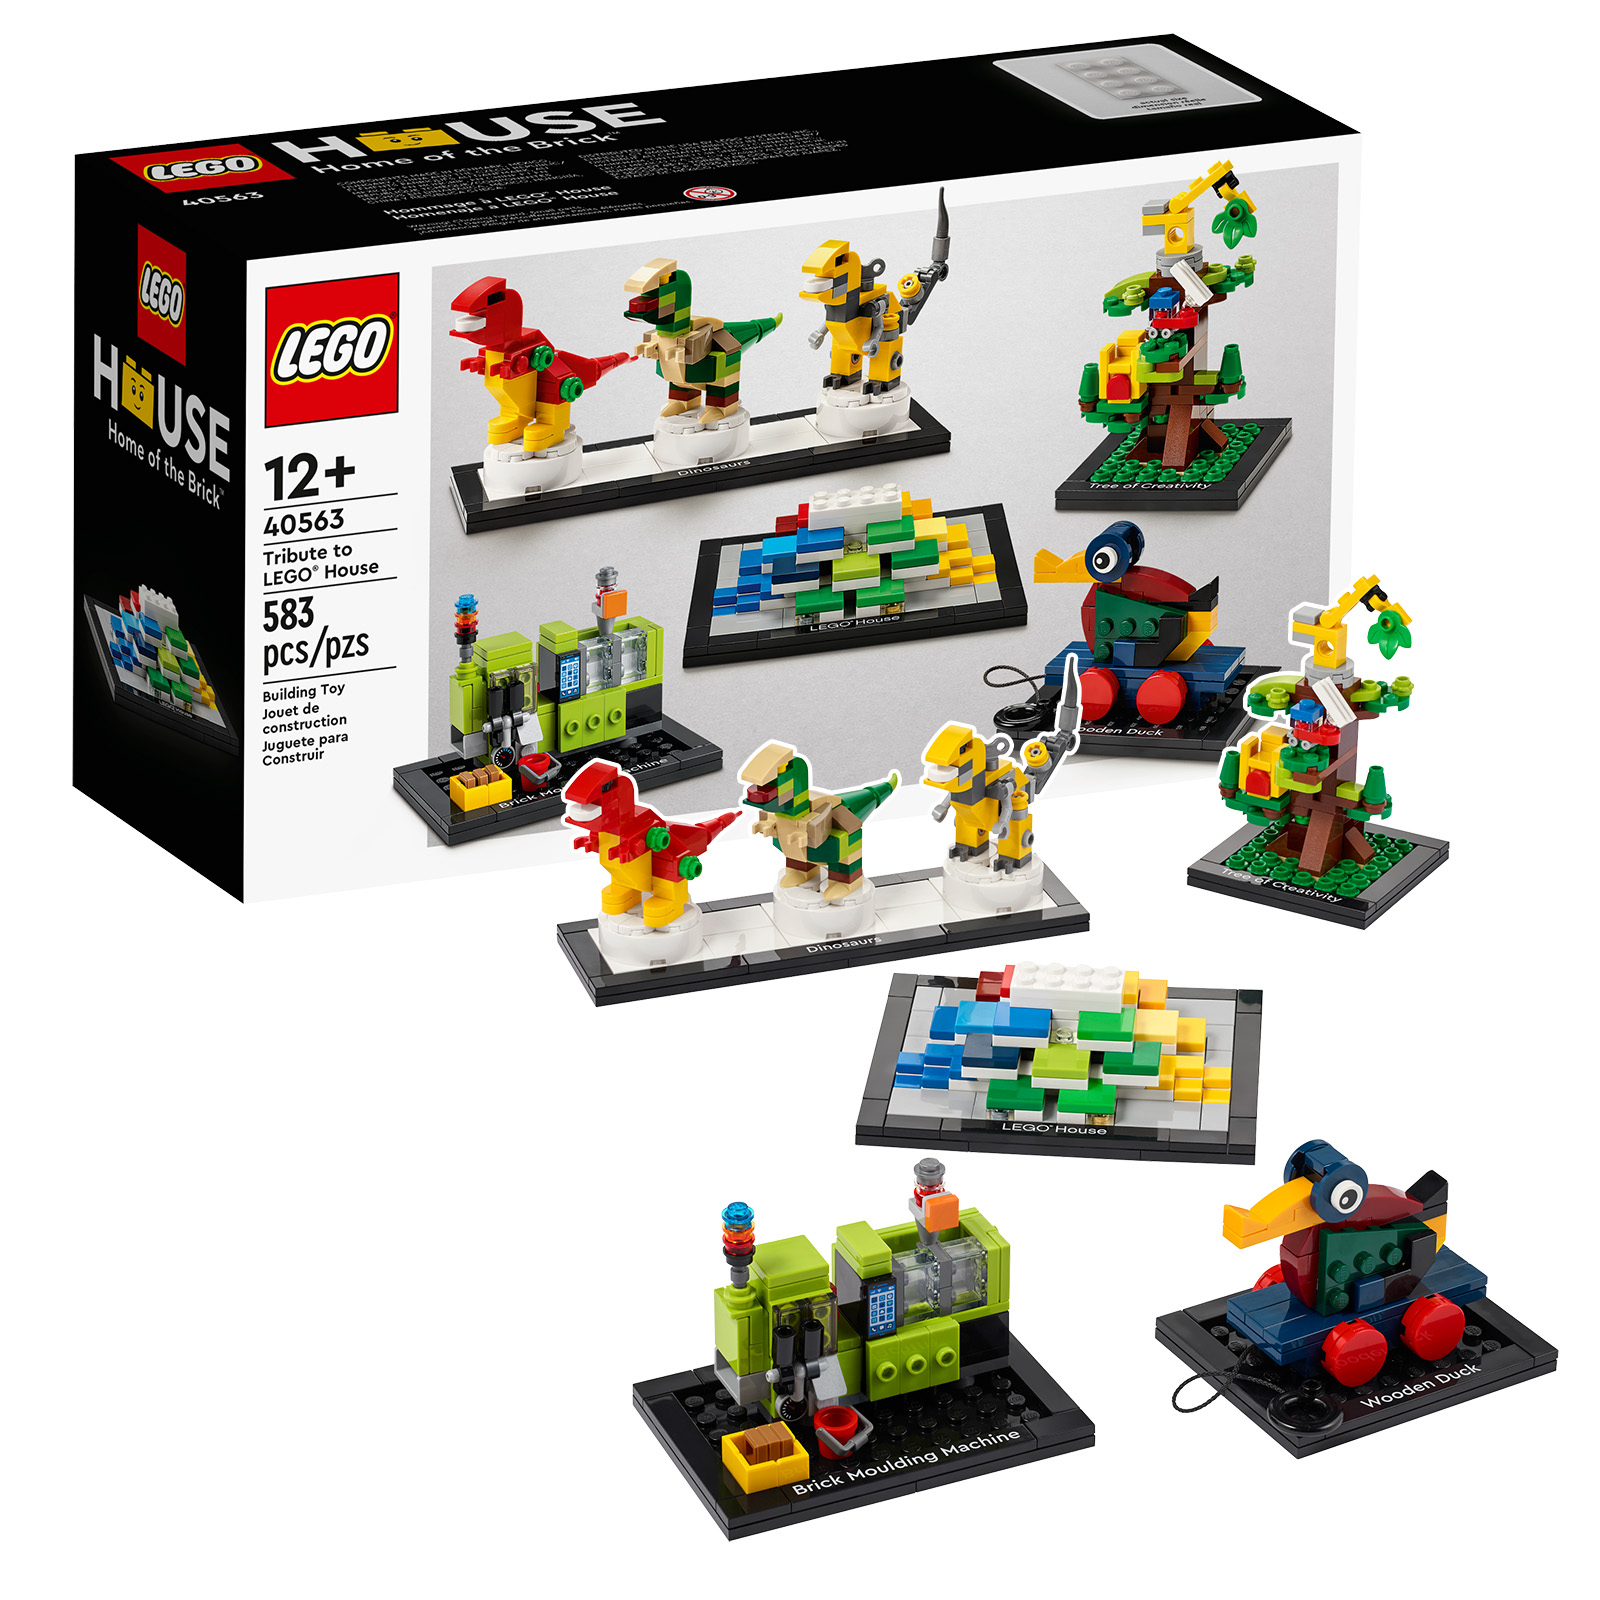 提醒：获得 LEGO 40563 Tribute to LEGO House 套装的最后几个小时